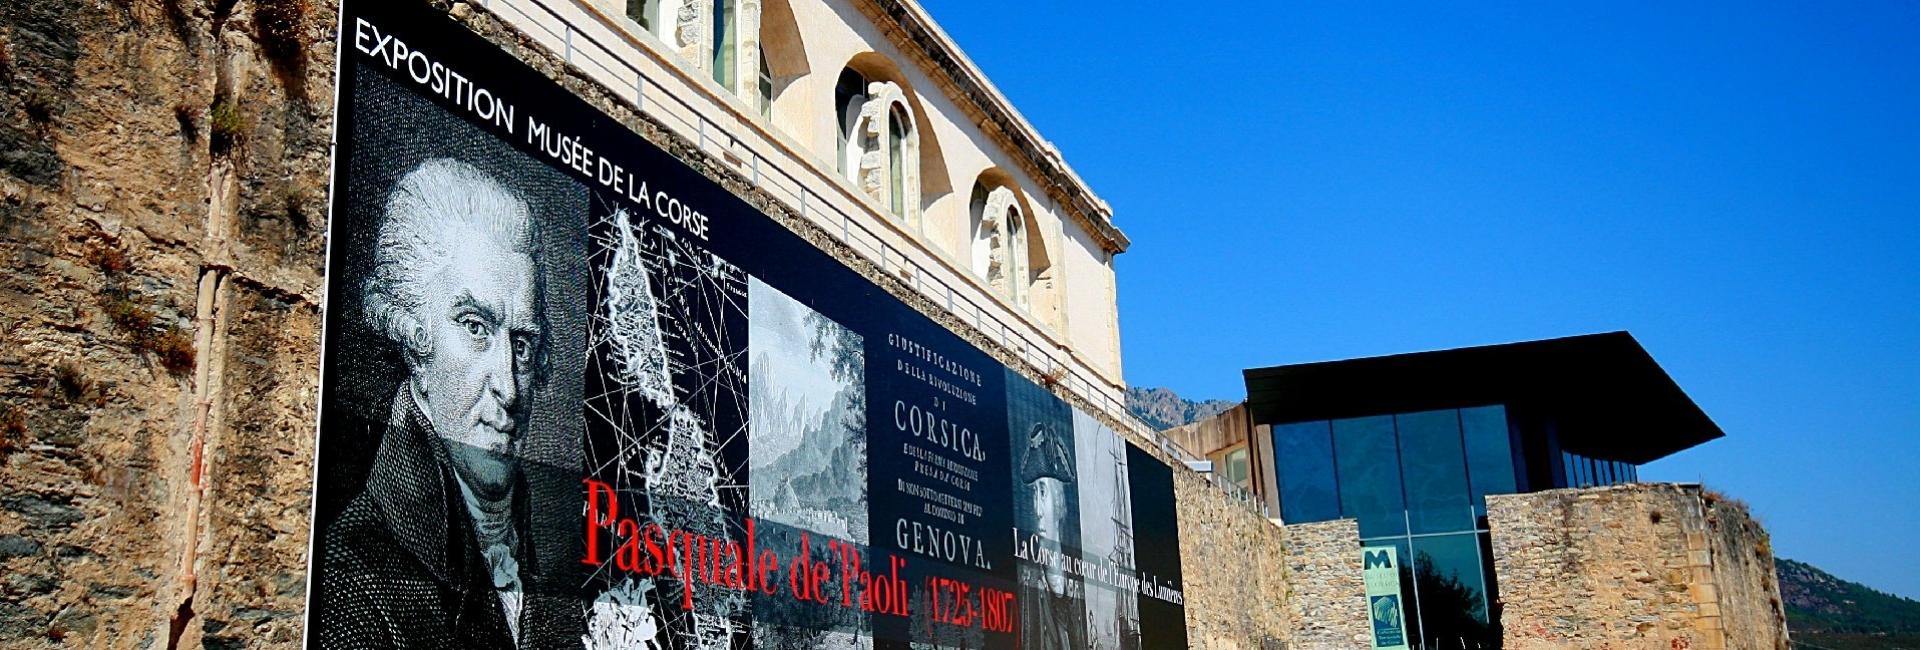 Il museo della Corsica